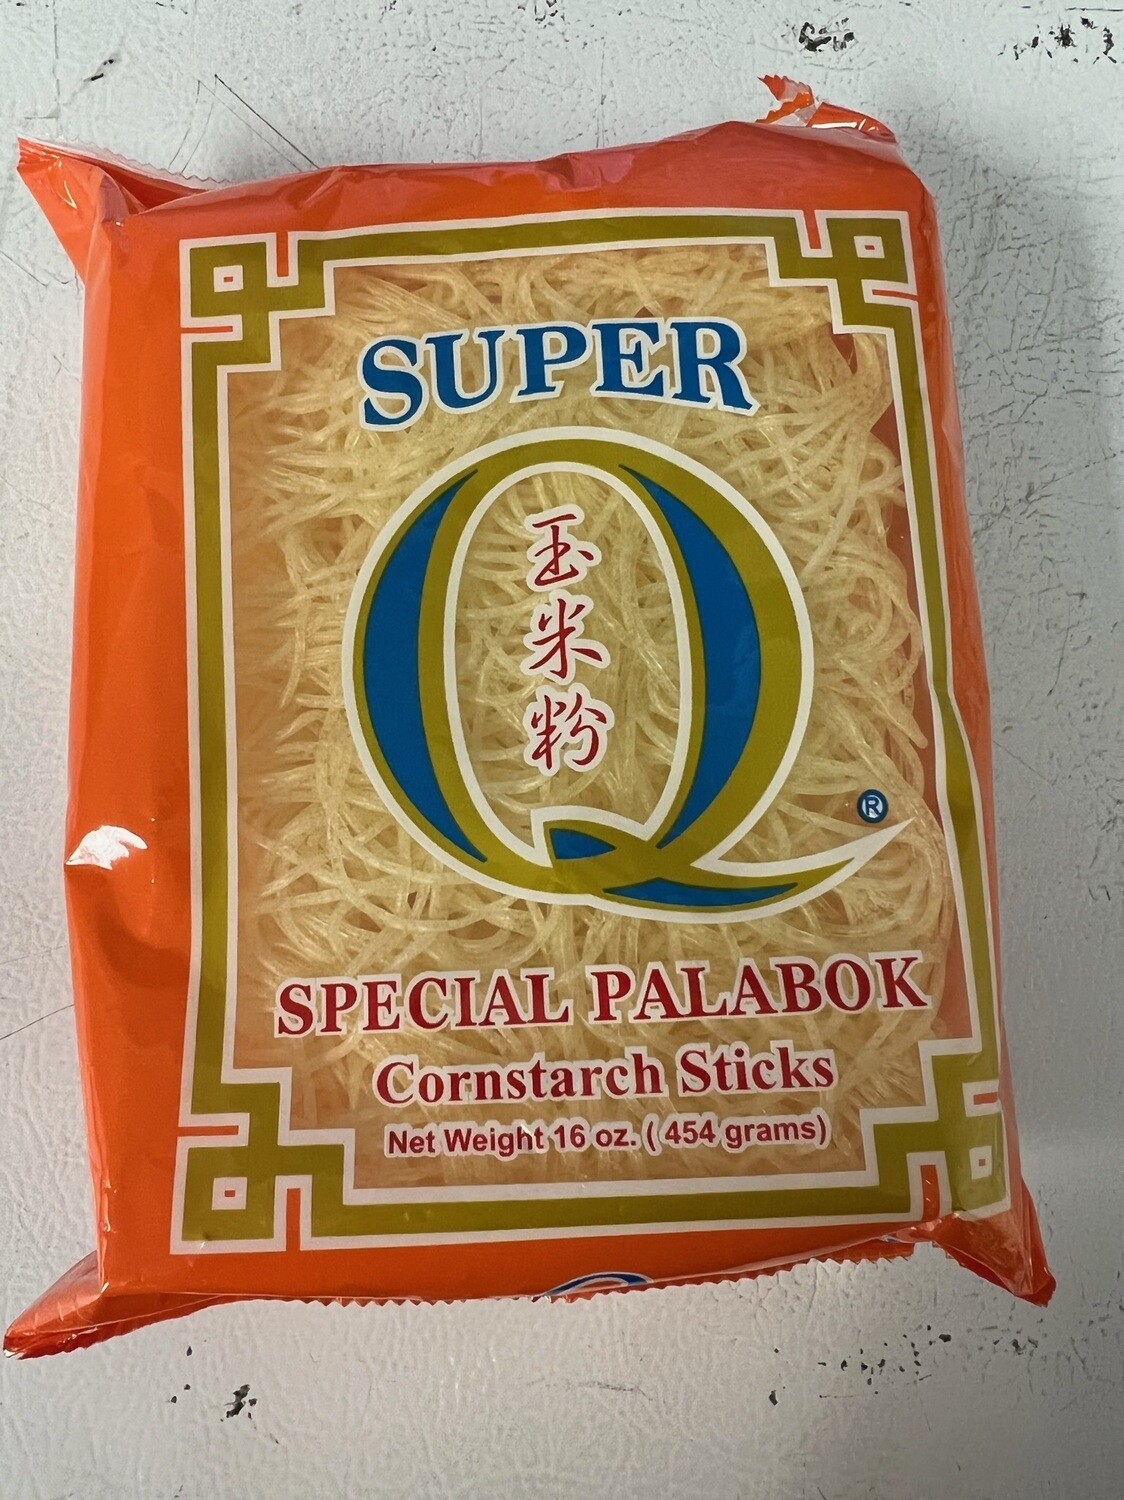 Super Q Special Palabok